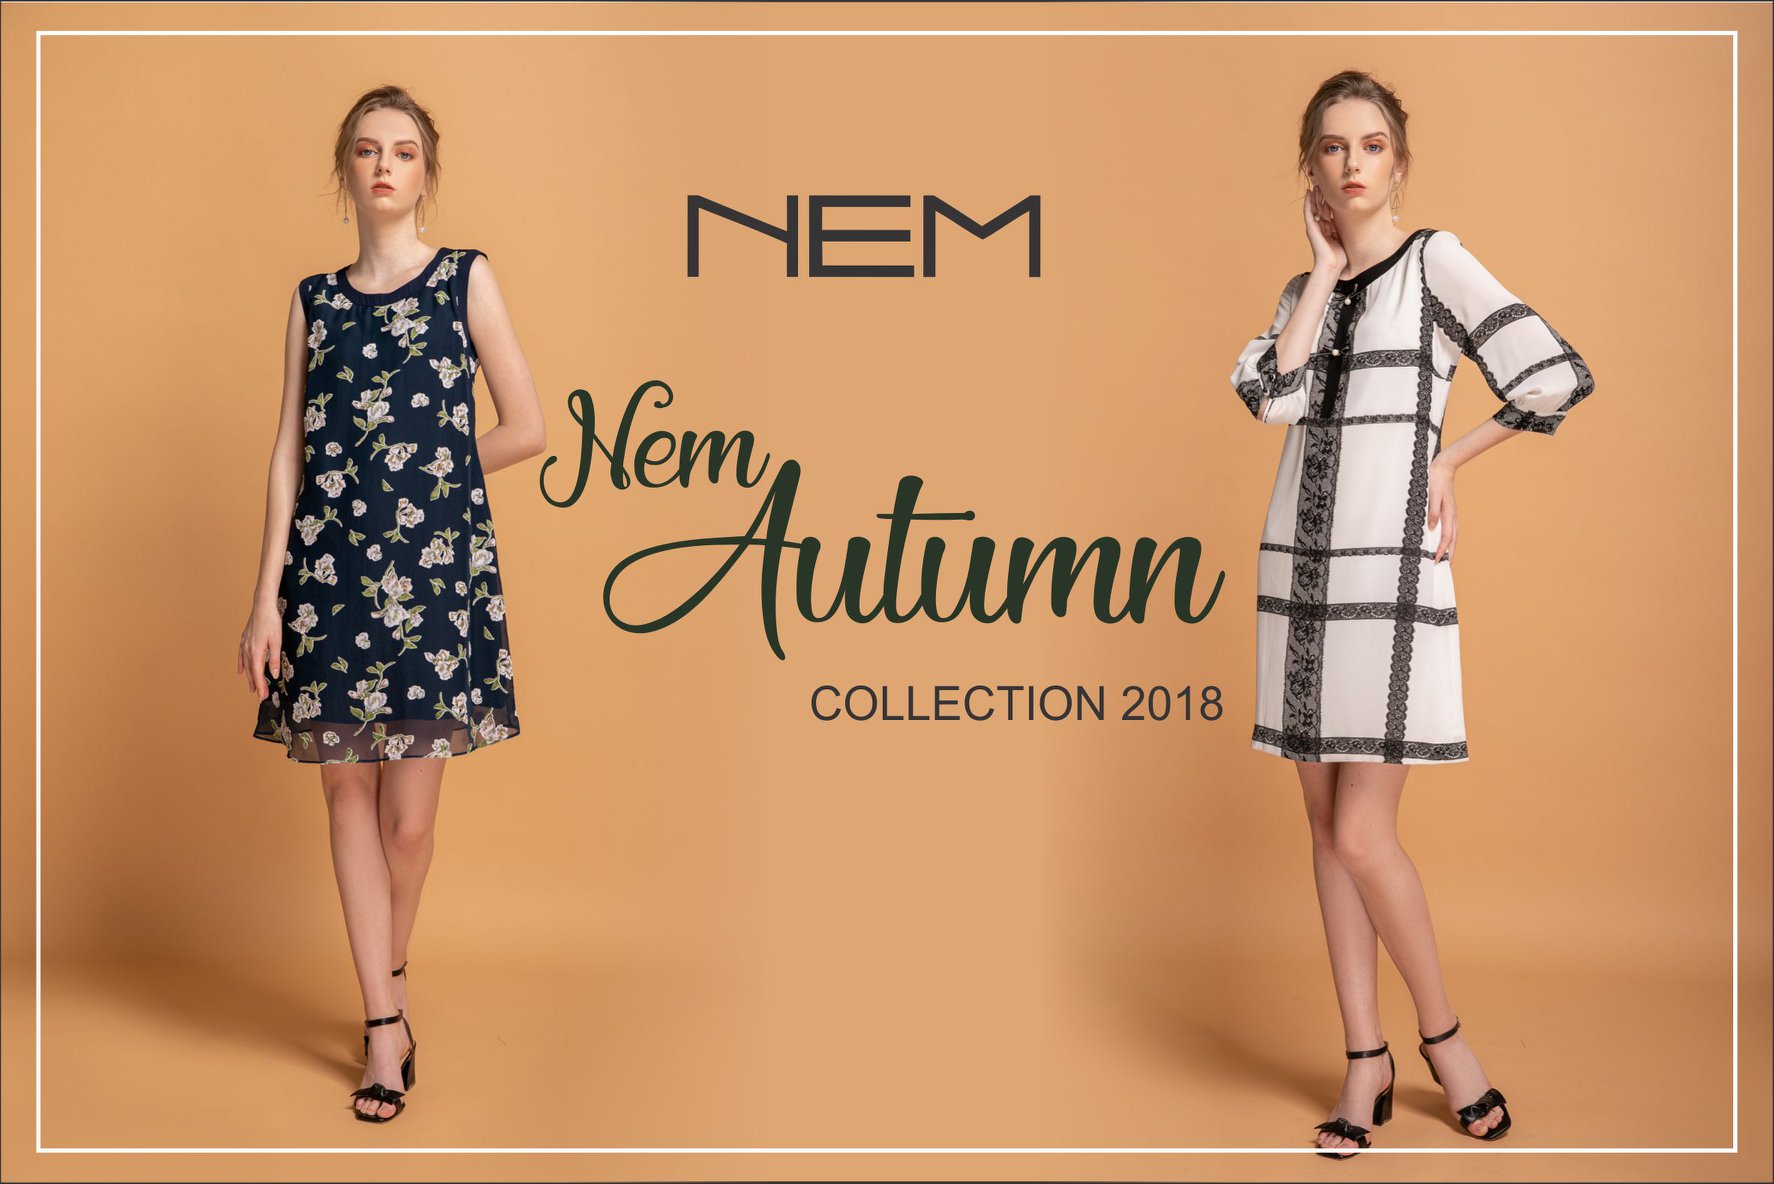 Khoản nợ hơn trăm tỷ của hãng thời trang NEM đang được ngân hàng rao bán